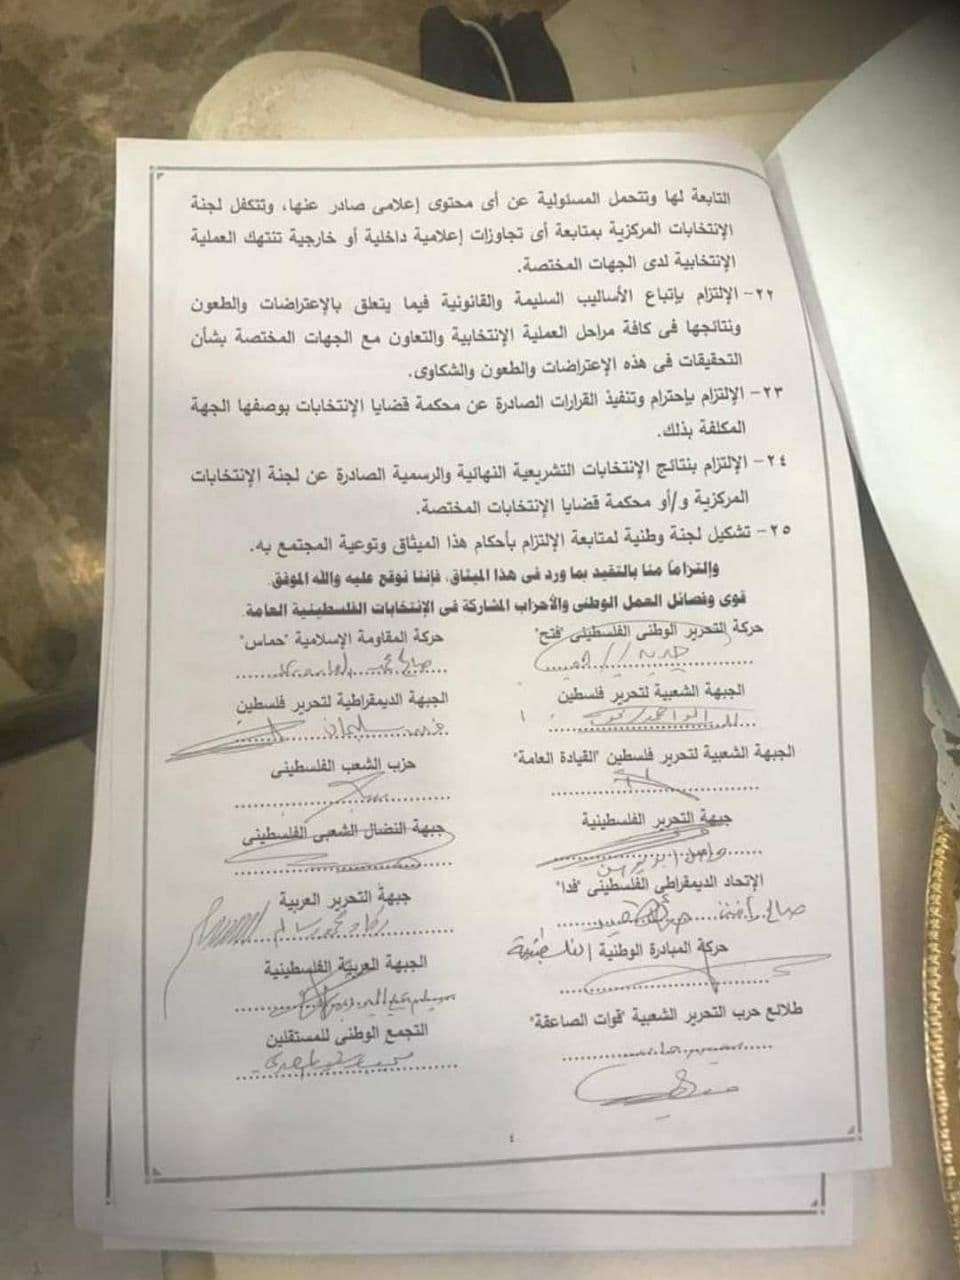 طالع ميثاق الشرف الذي وقّعت عليه الفصائل الفلسطينية في القاهرة